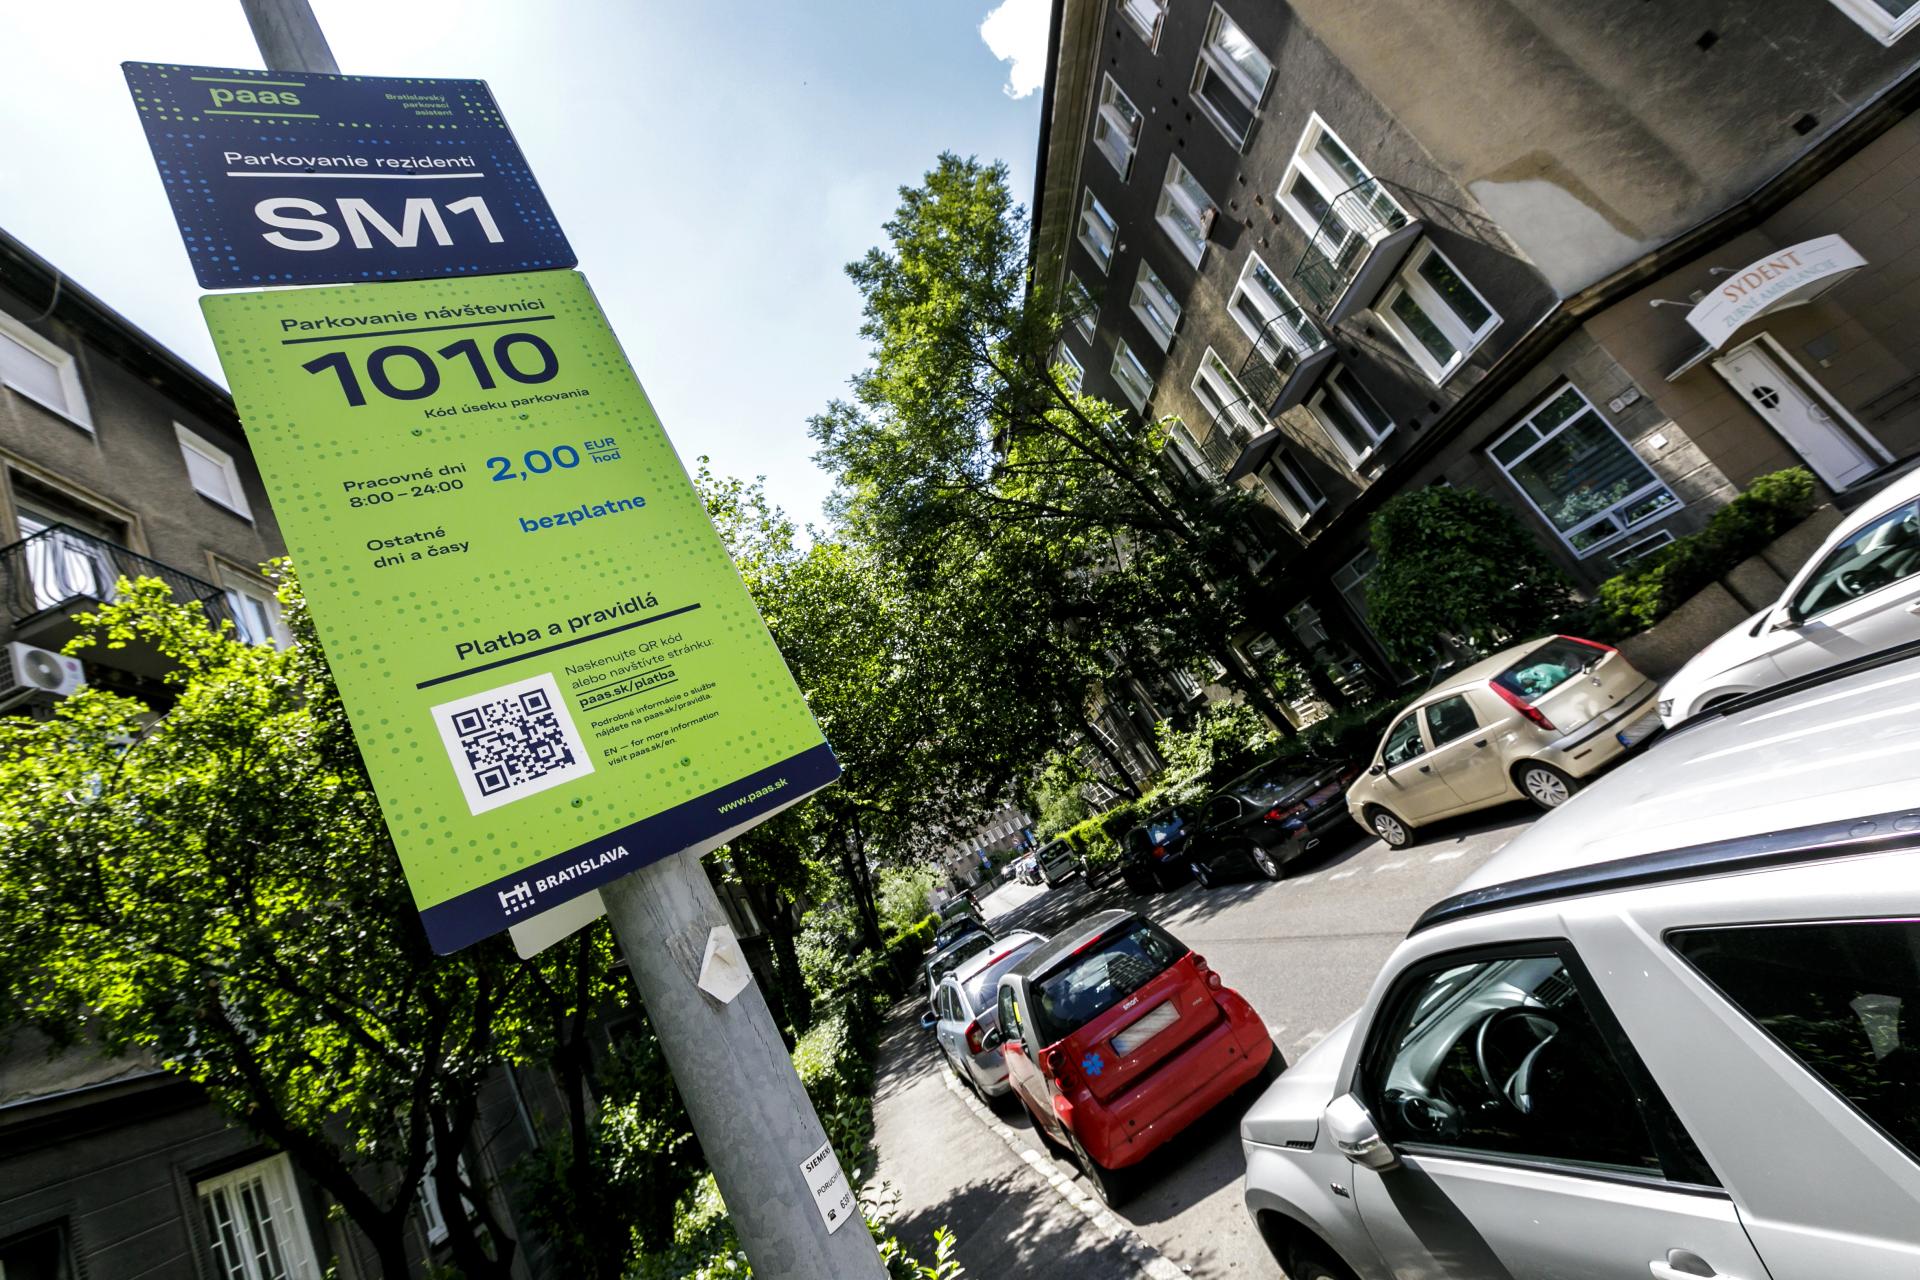 SMS platby v bratislavských parkovacích zónach by mesto mohlo spusiť na prelome mája a júna